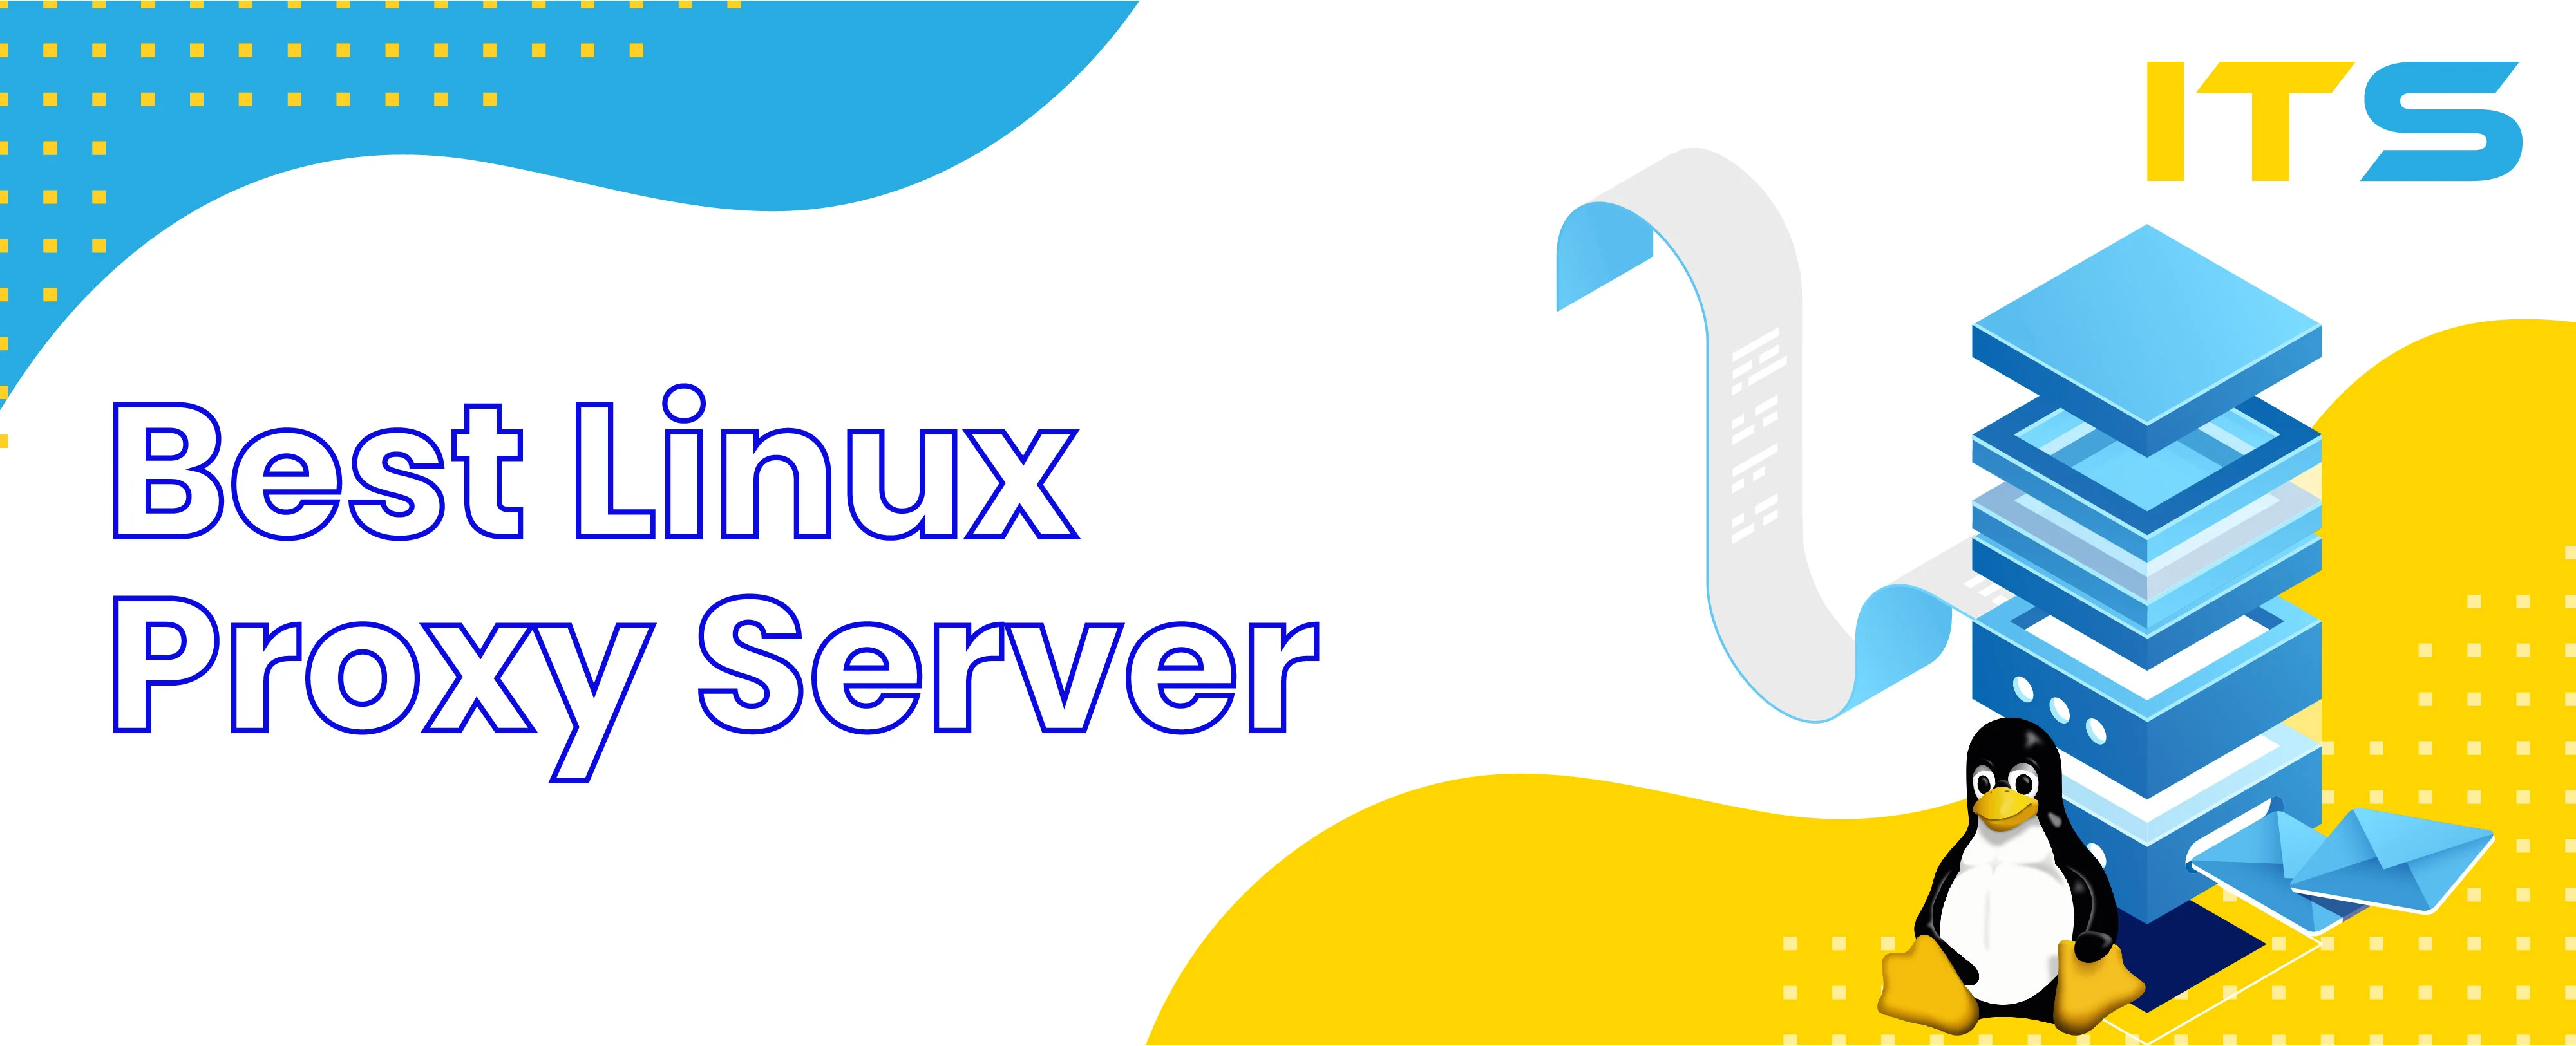 Best Linux Proxy Server